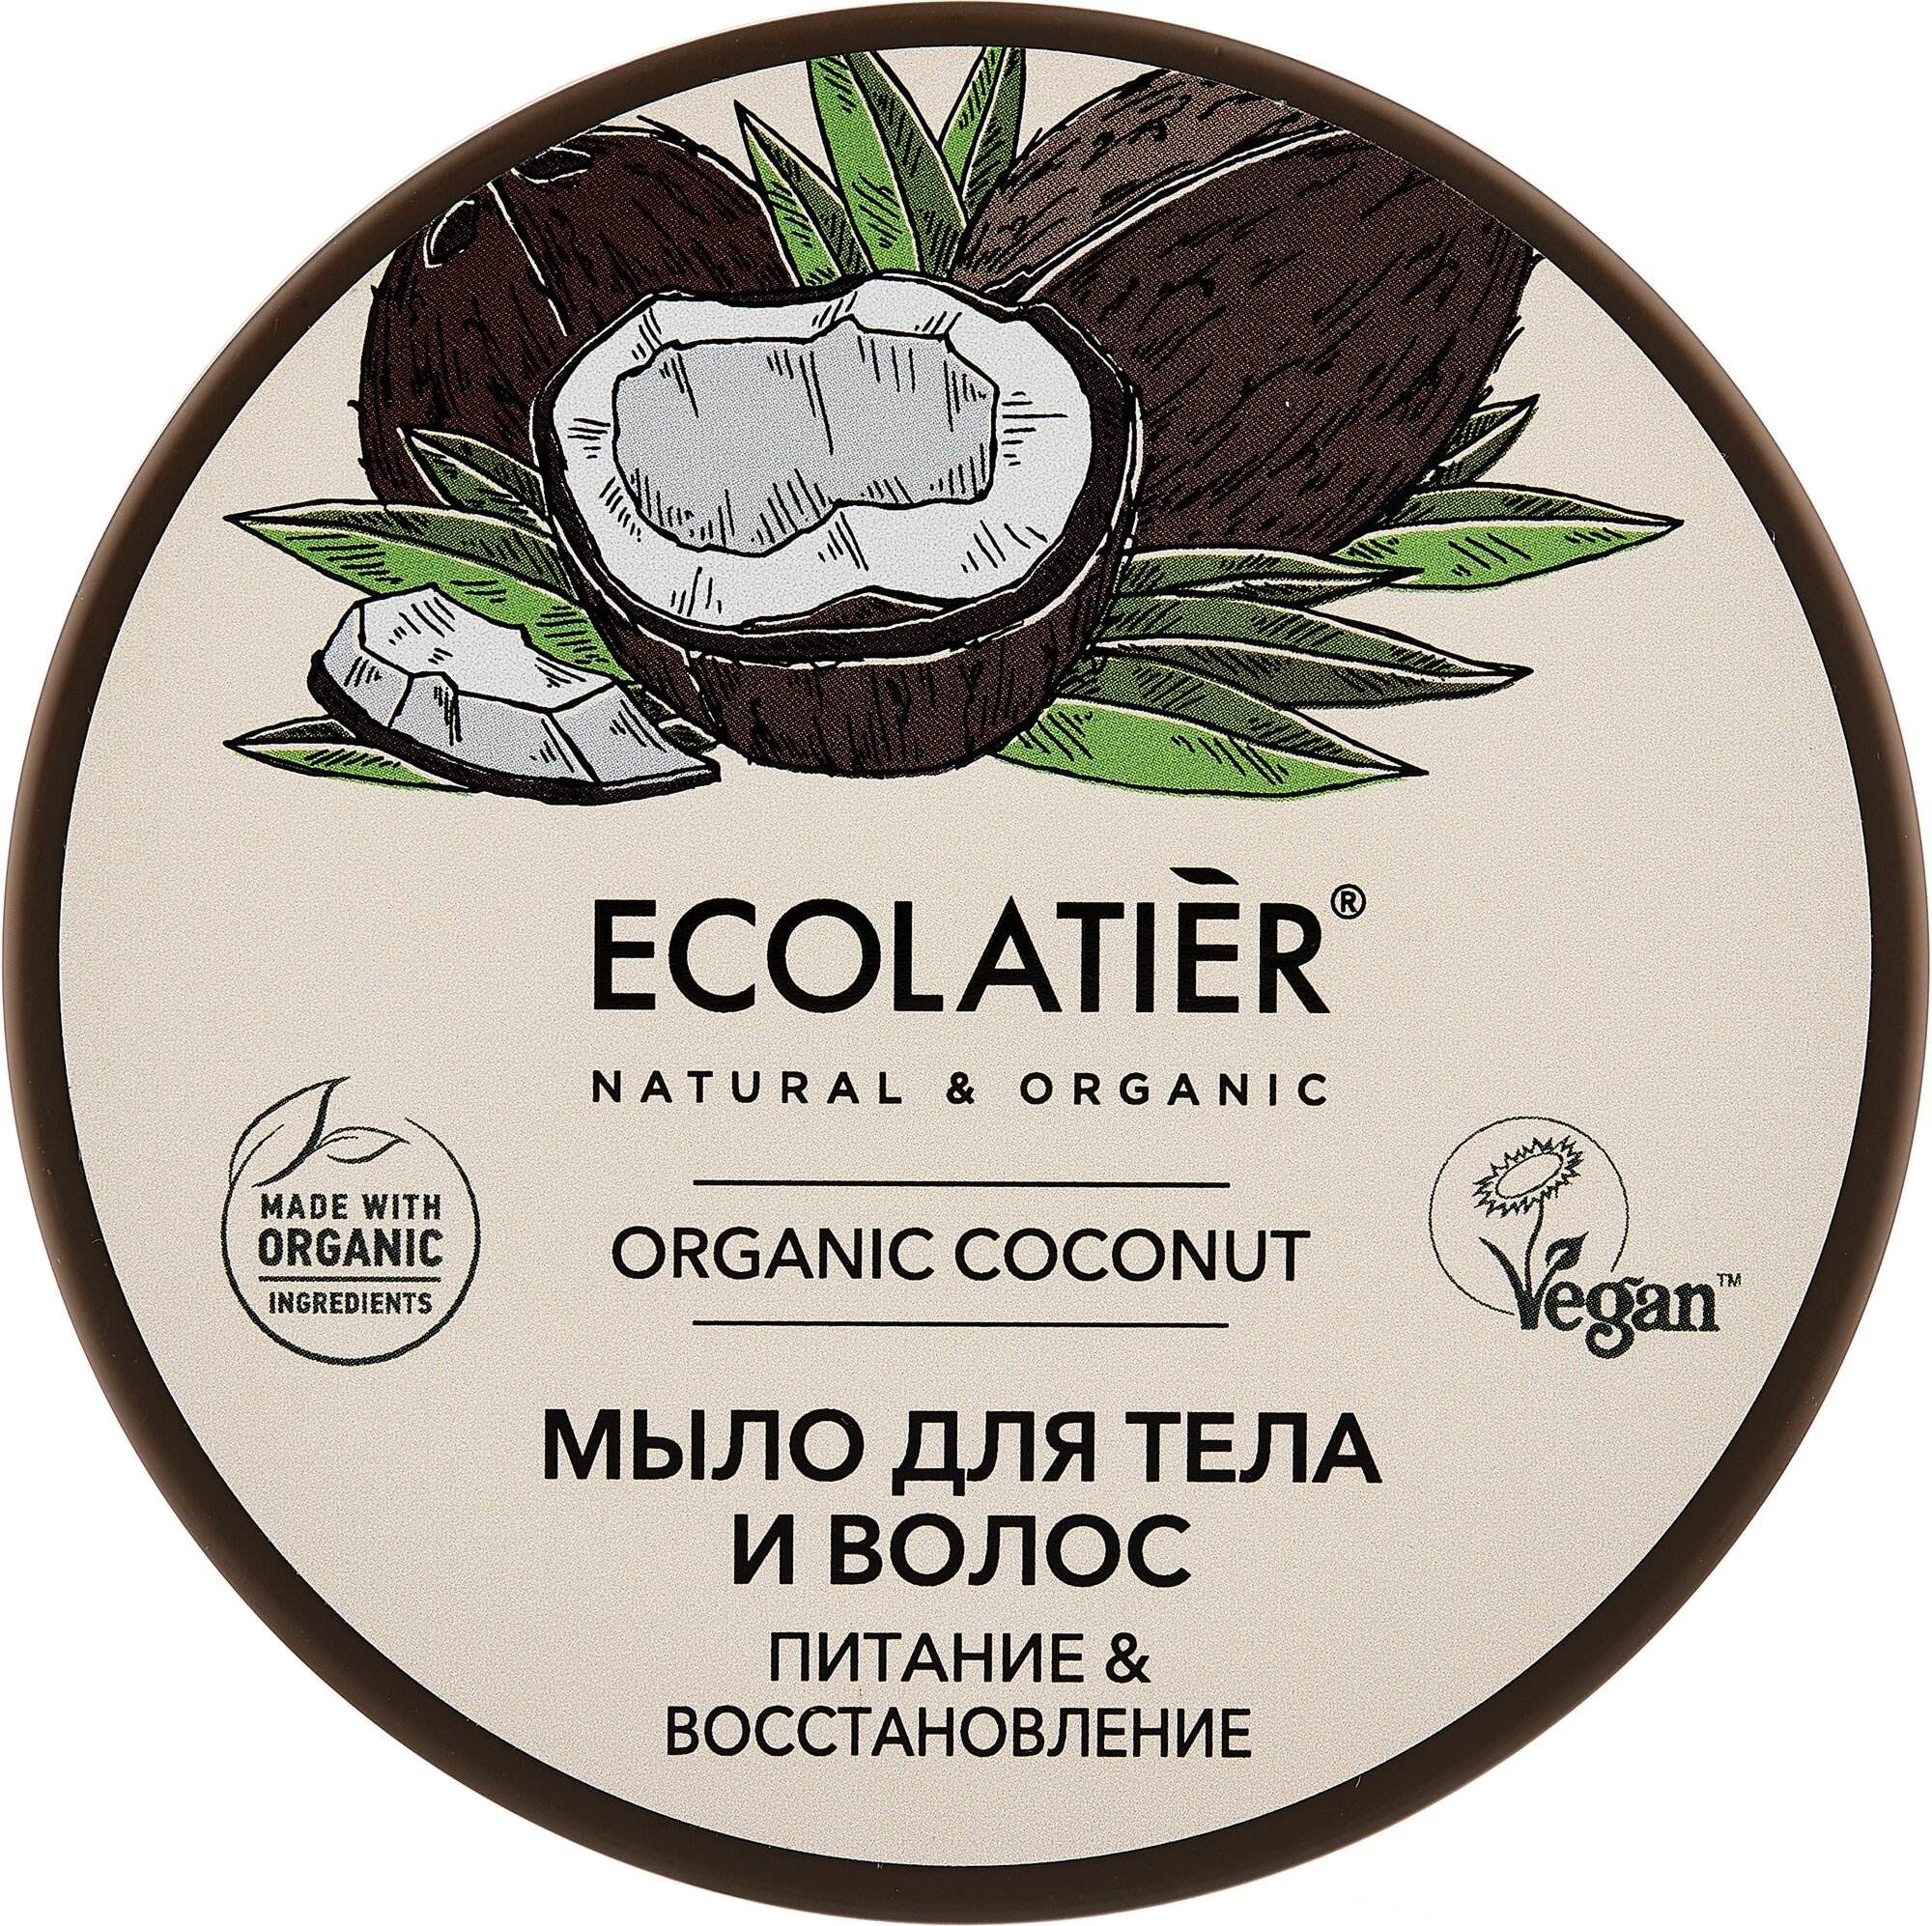 Ecolatier GREEN Мыло для тела и волос Питание & Восстановление Серия ORGANIC COCONUT, 350 мл